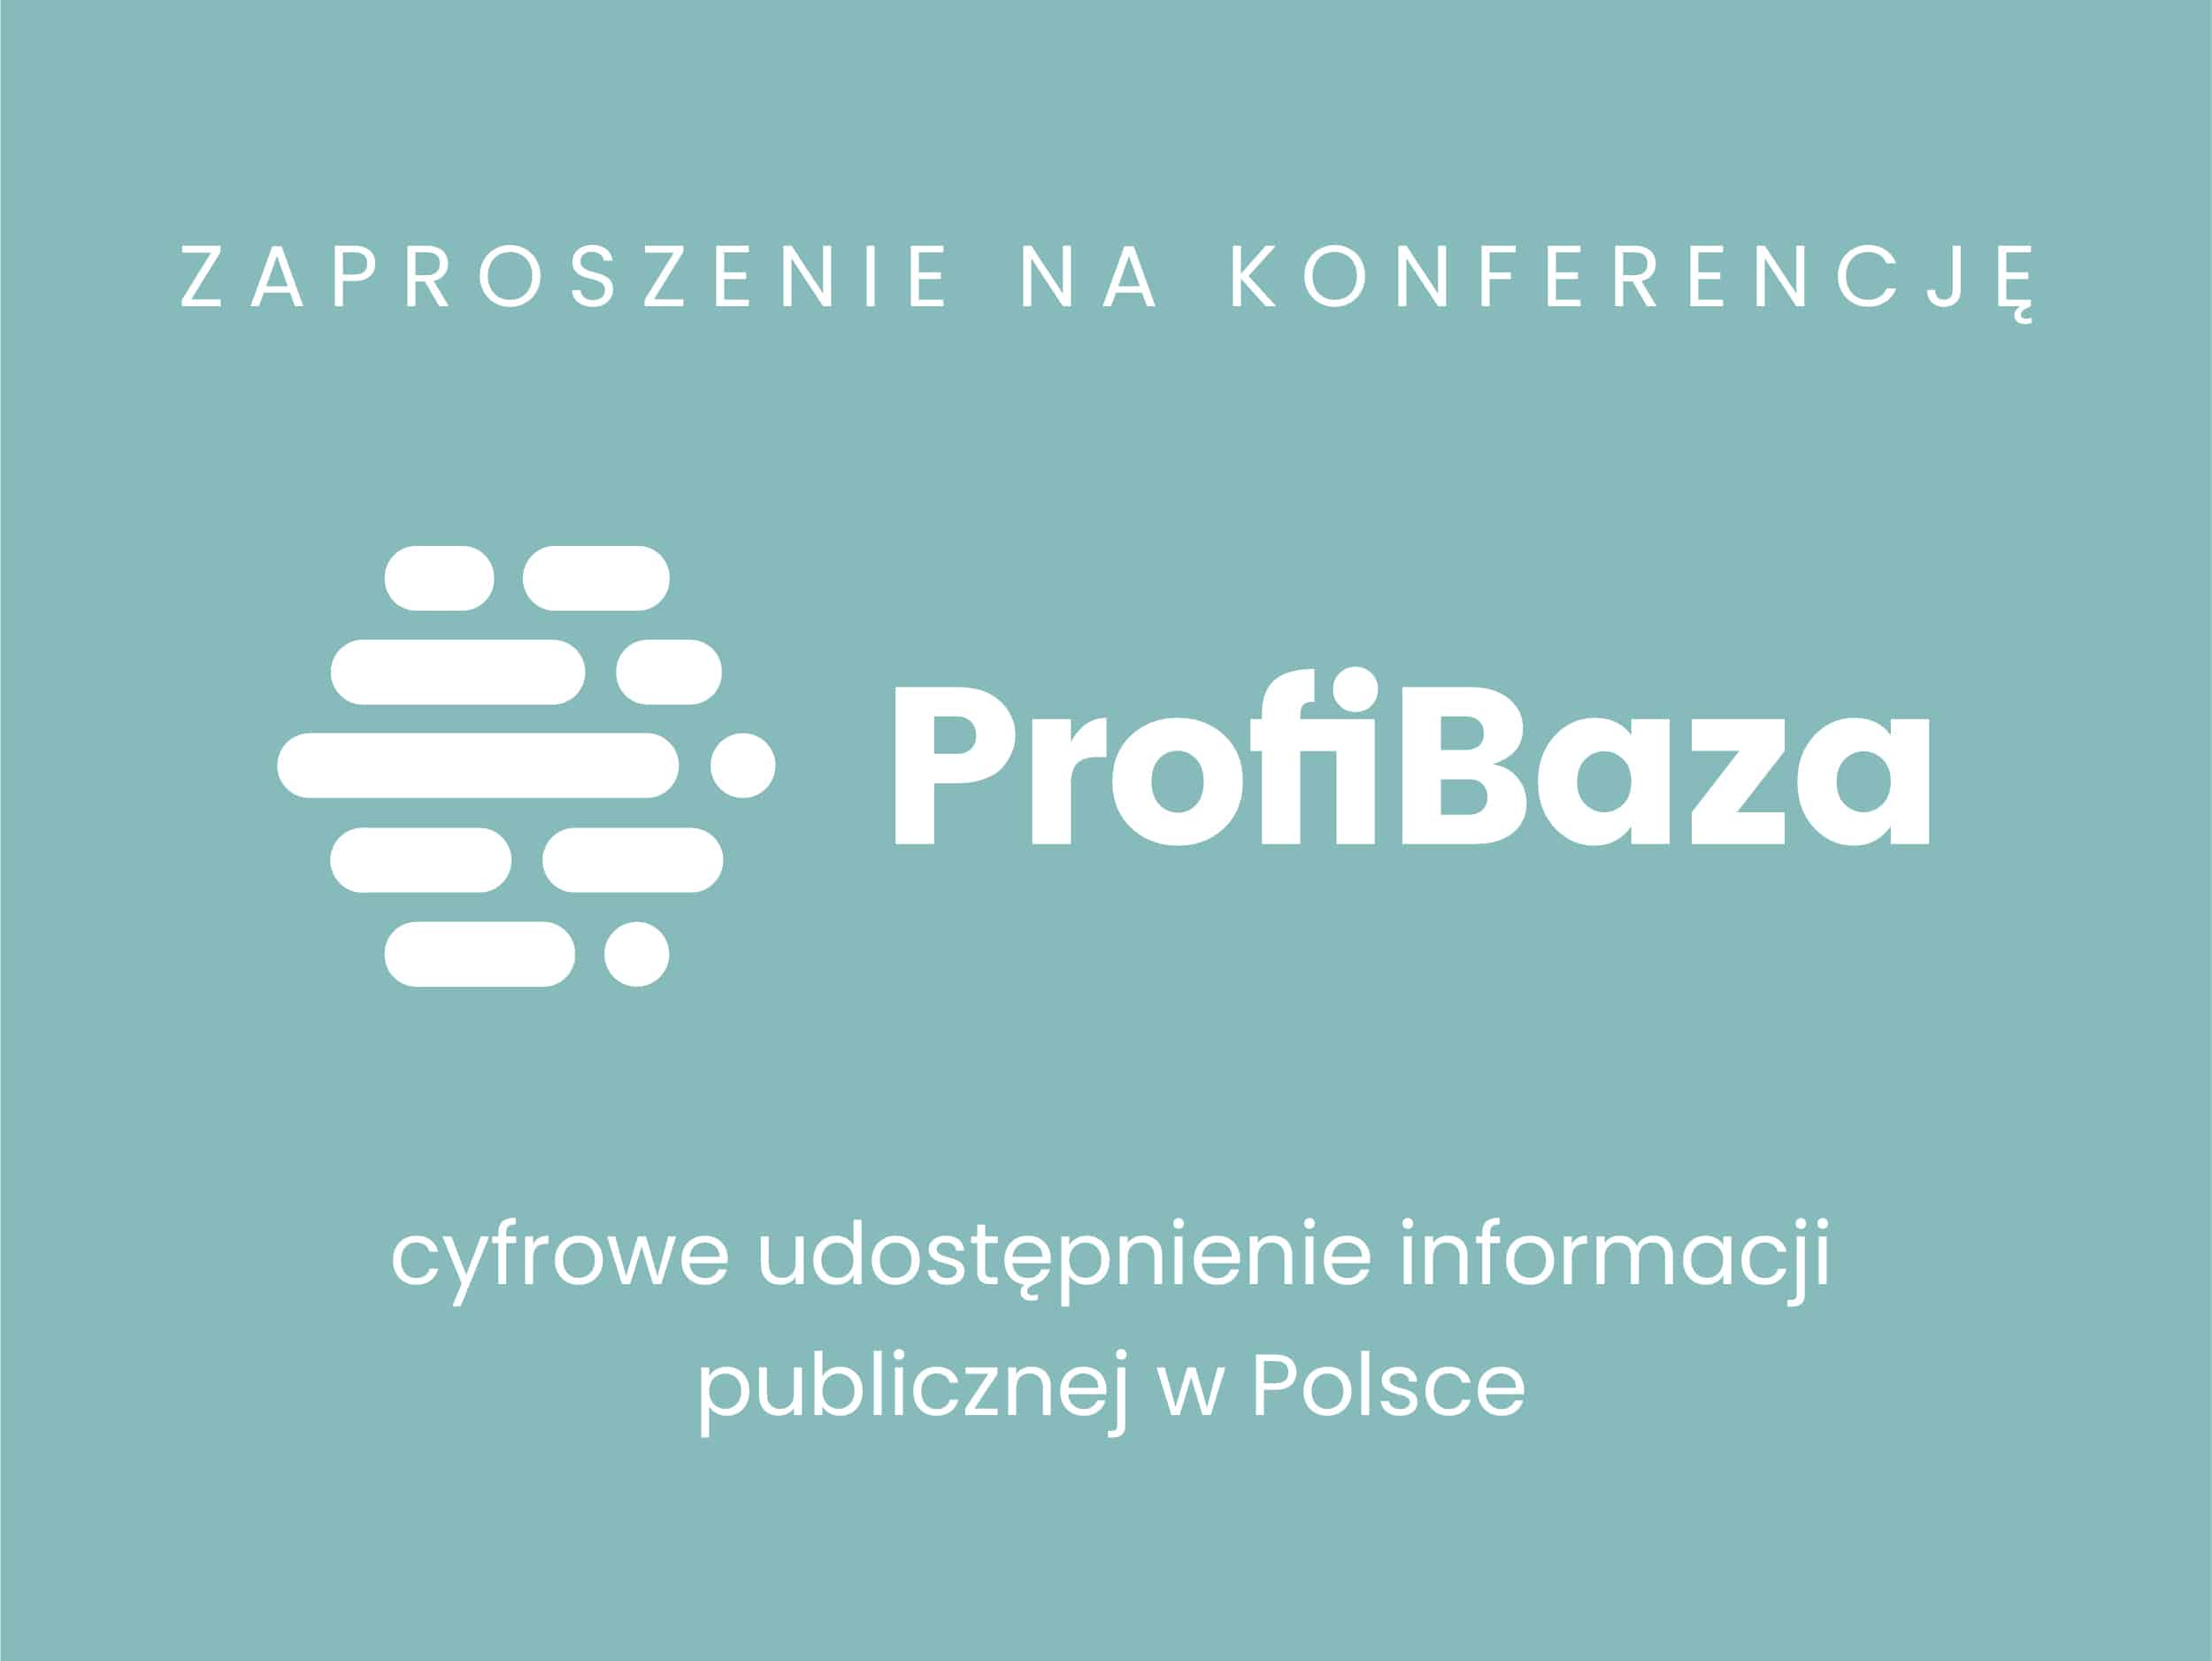 ProfiBaza zaproszenie na konferencję